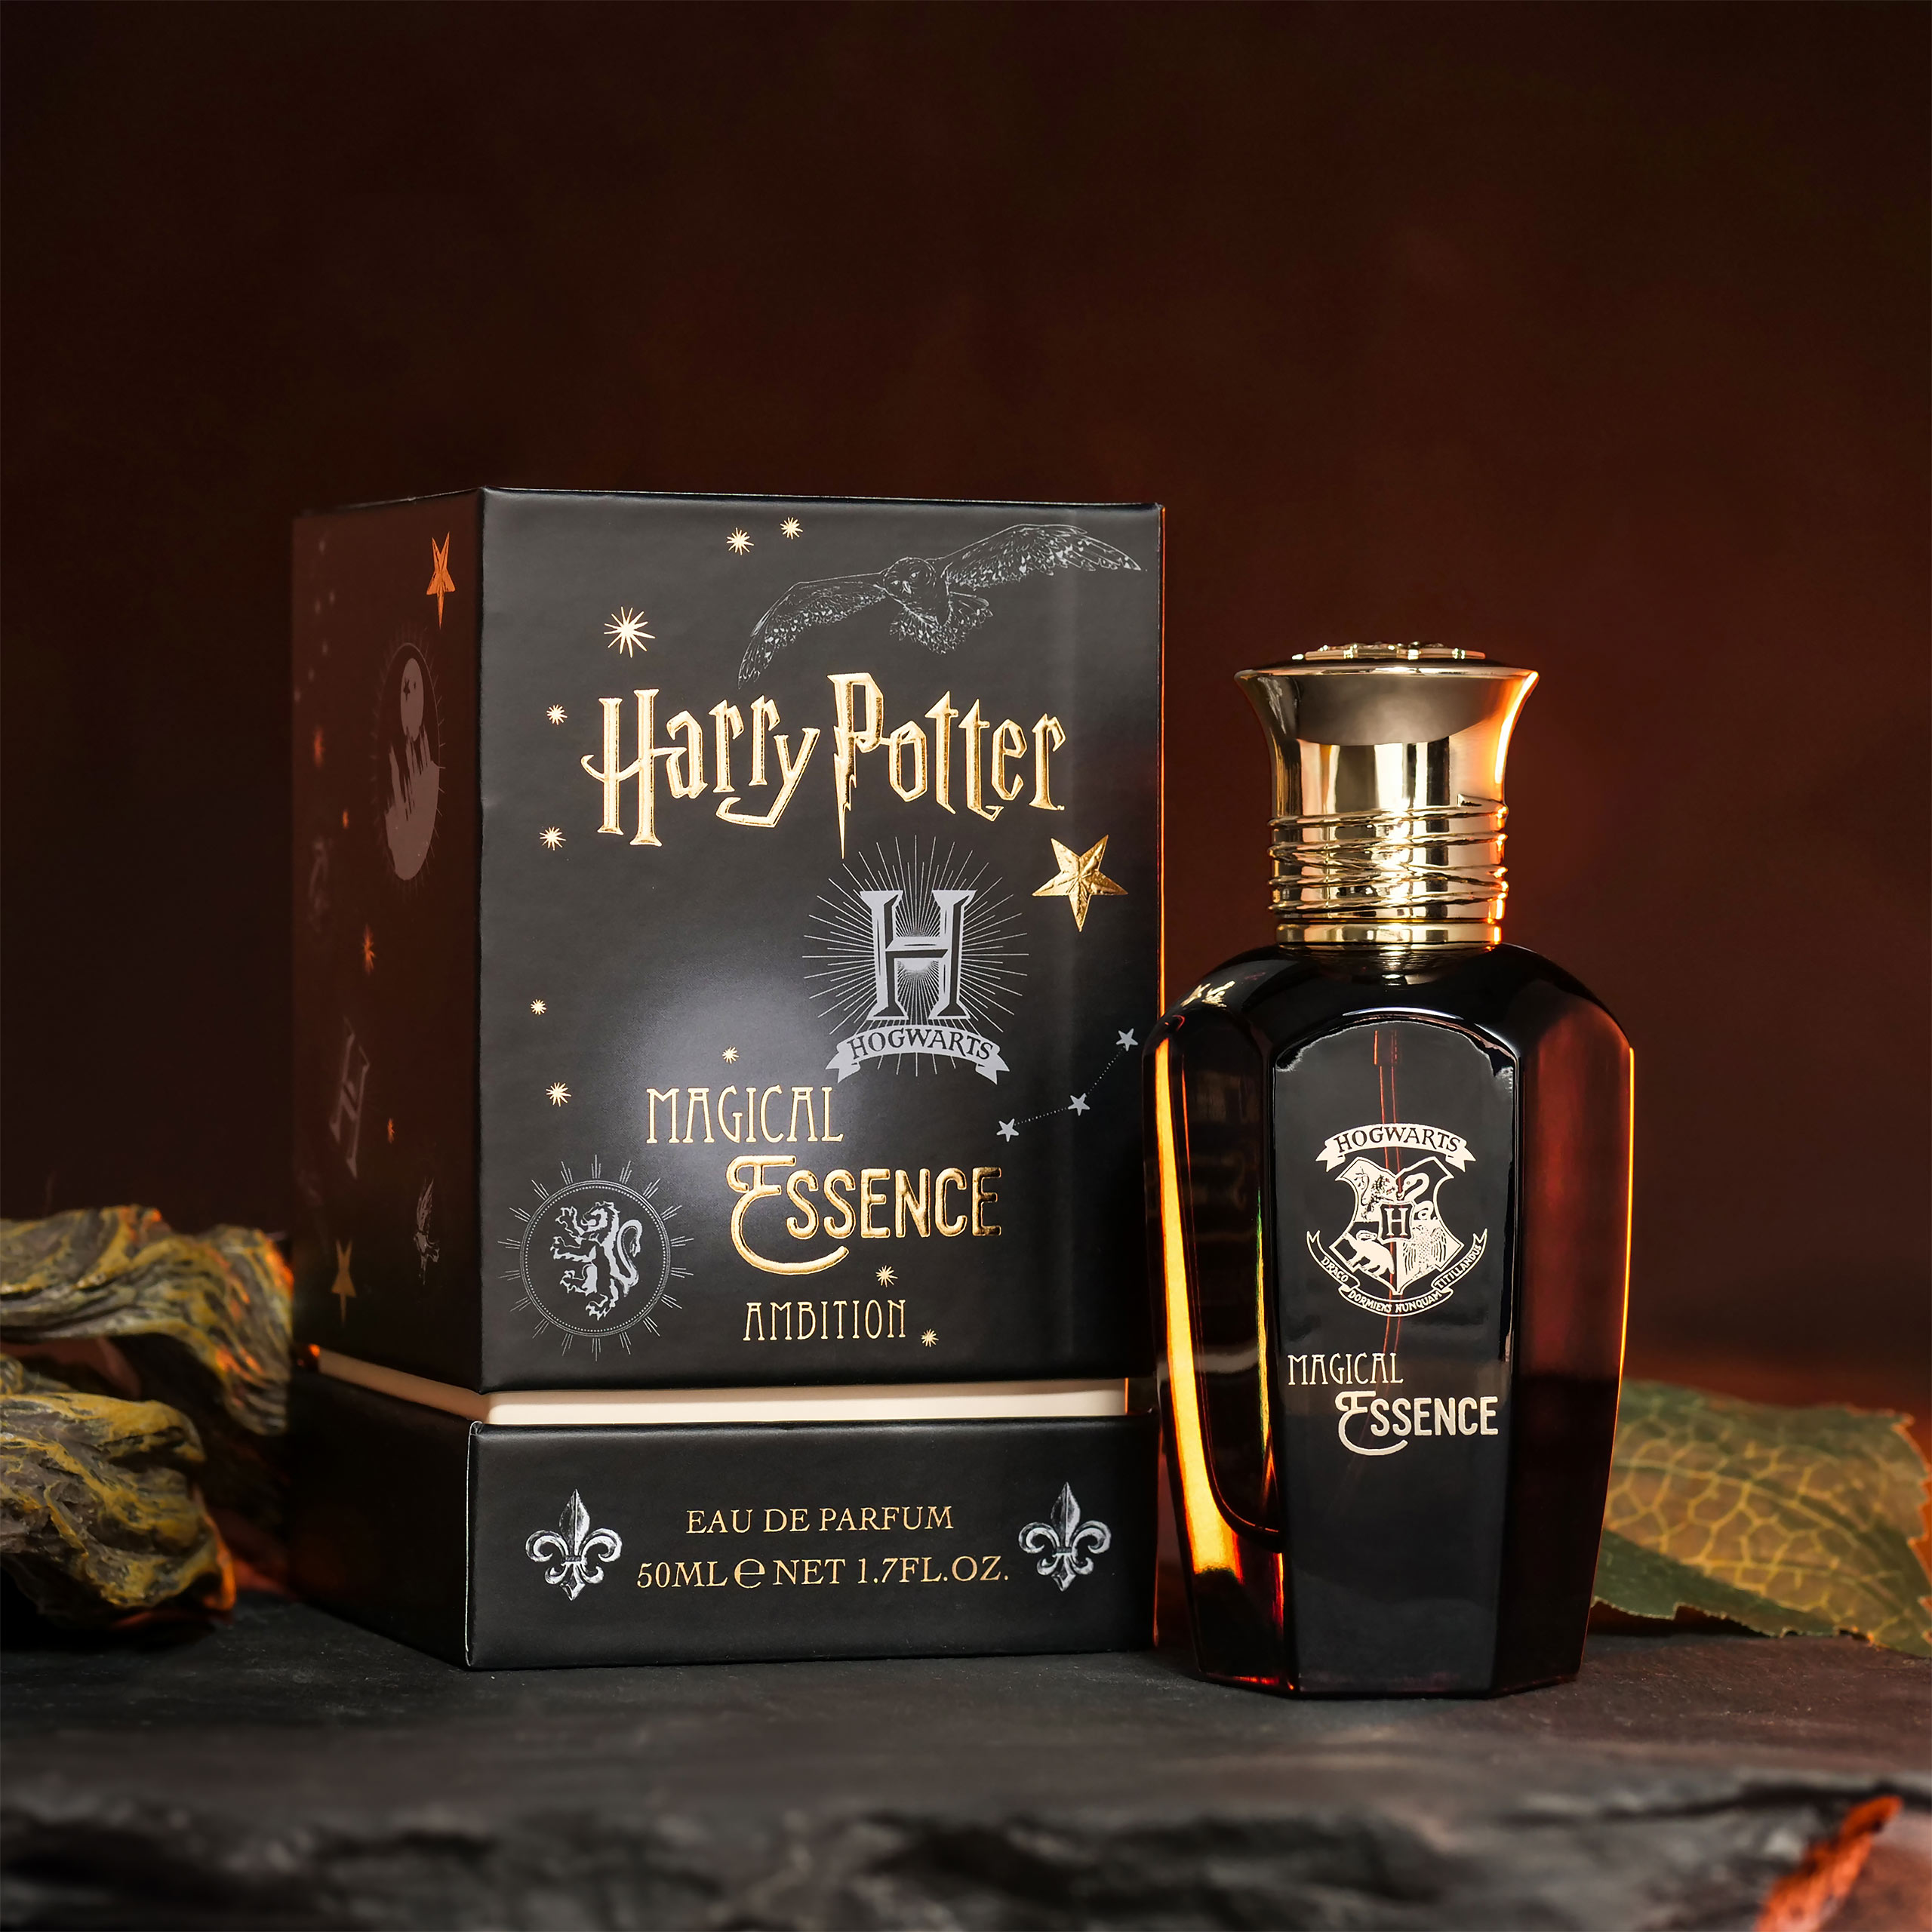 Harry Potter - Magical Essence Ambiton Eau de Parfum